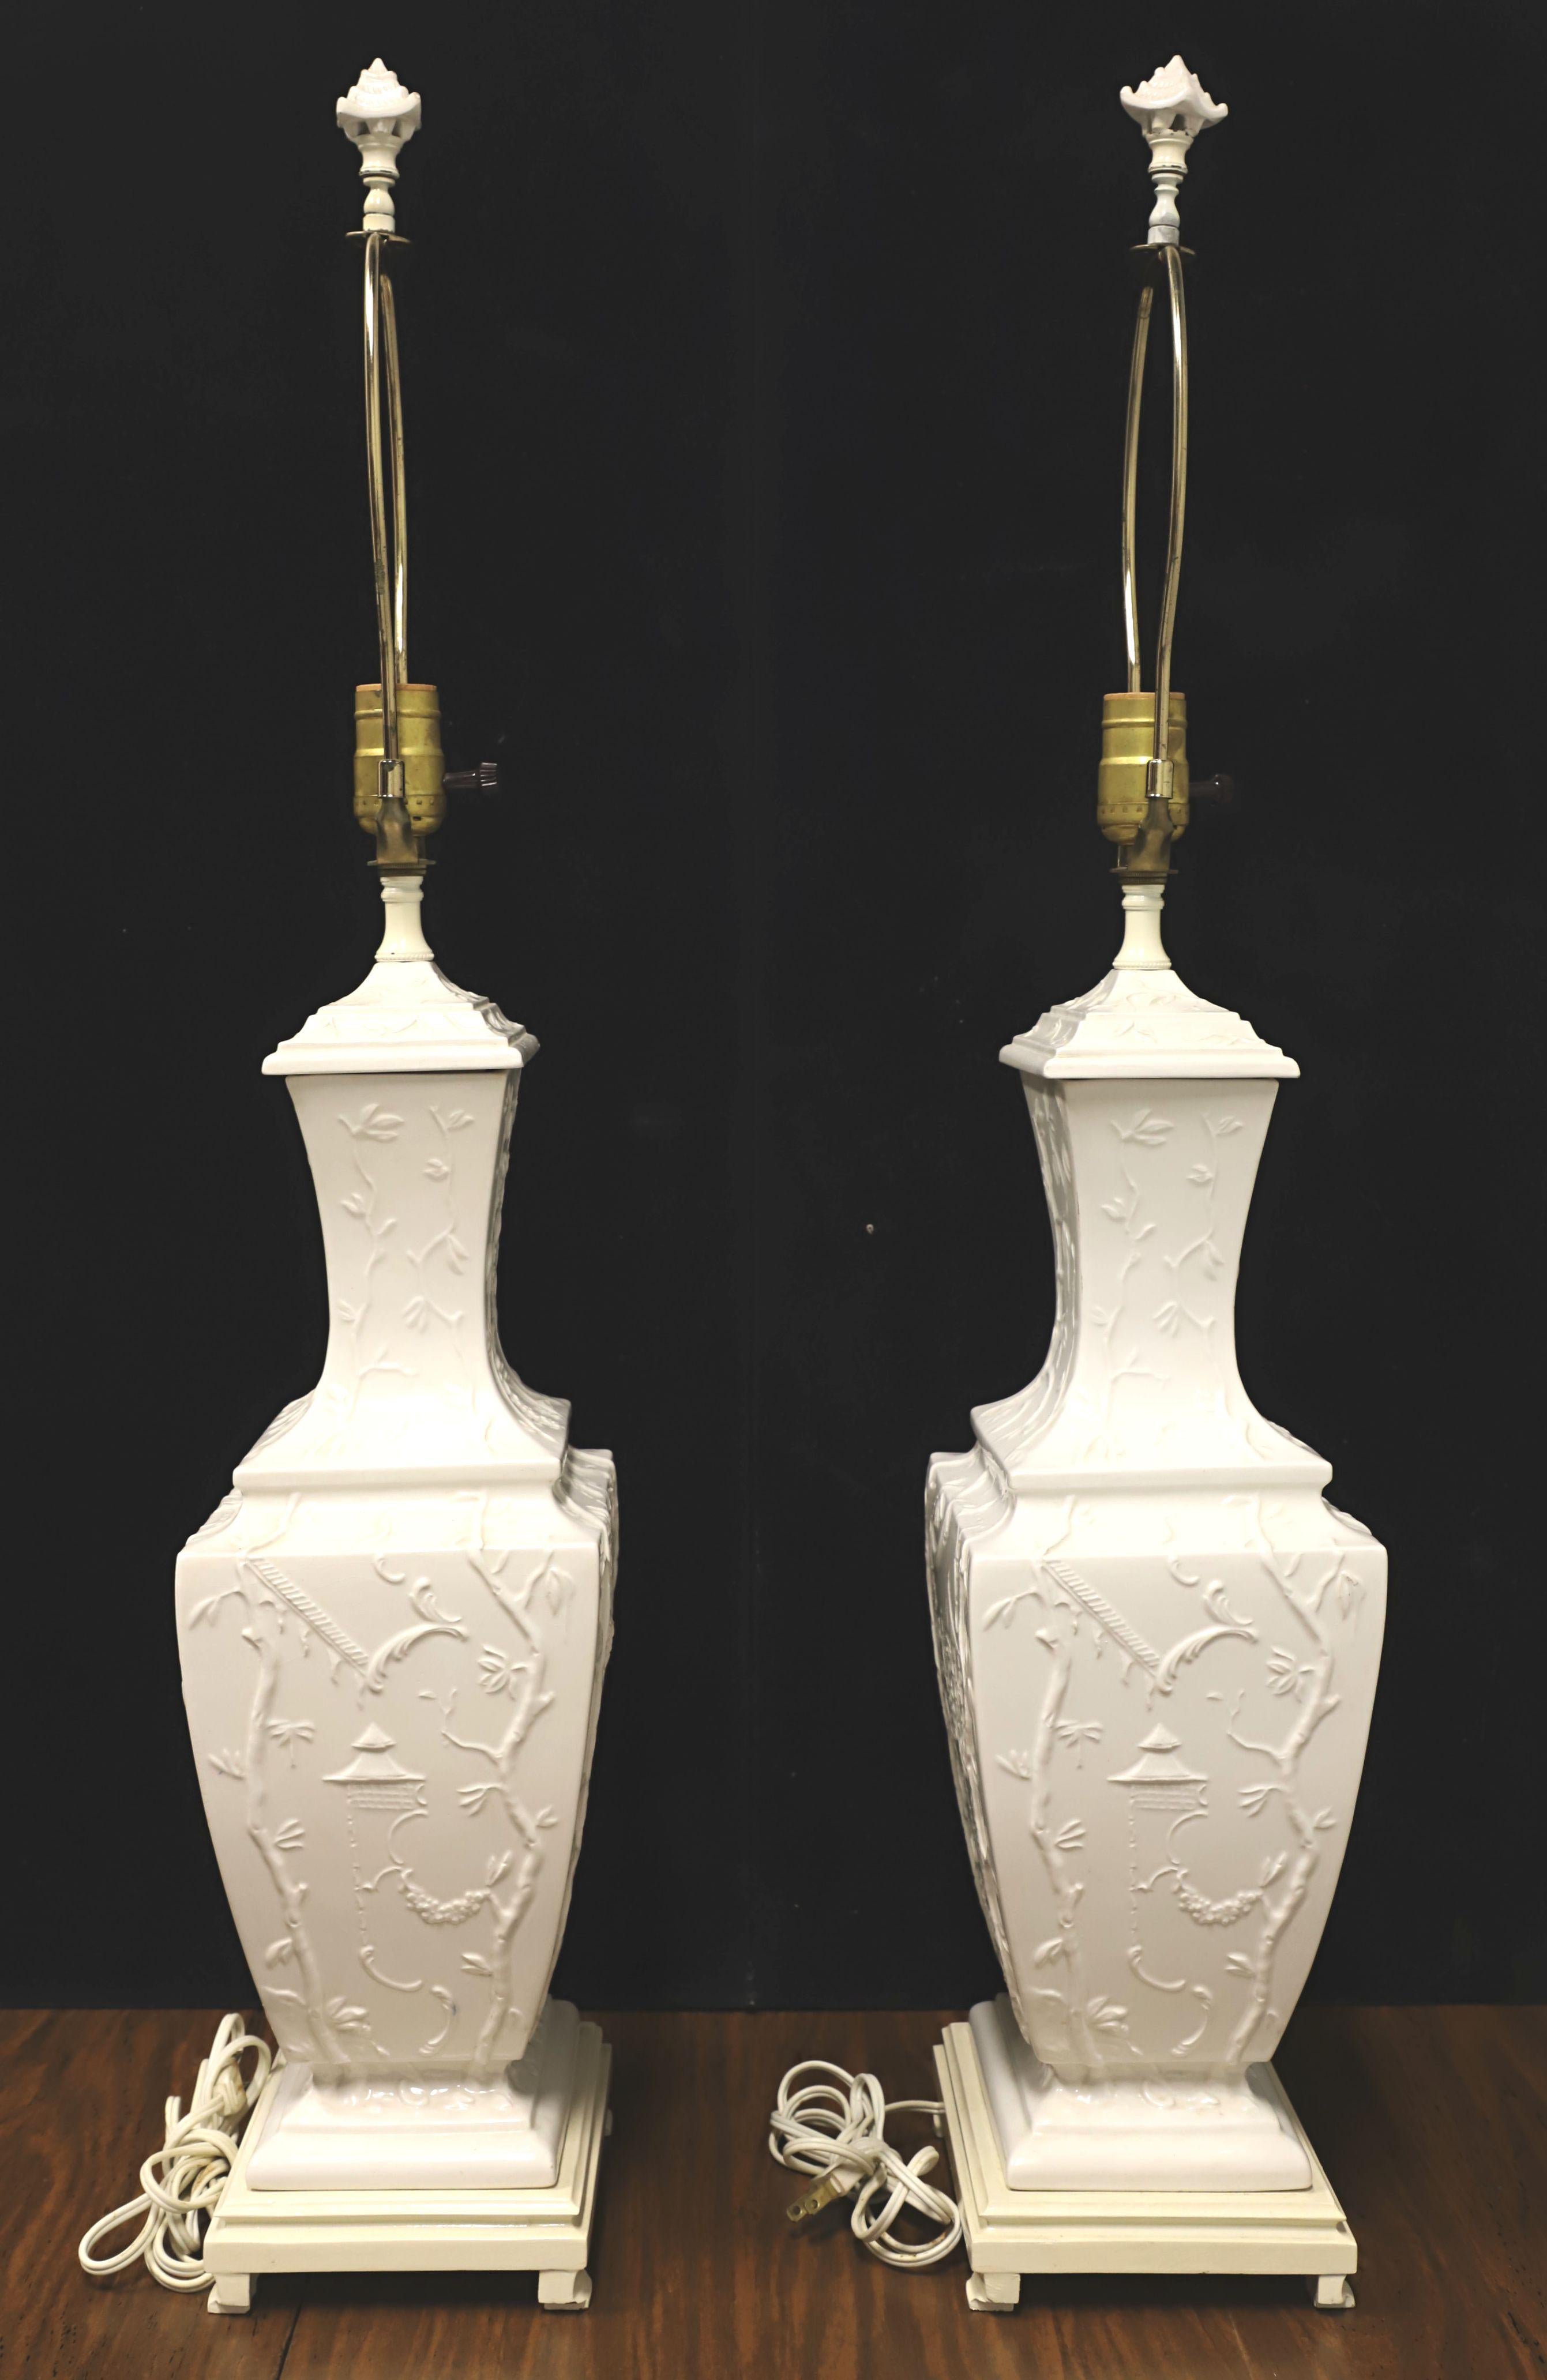 Paire de lampes de table de style Chinoiserie asiatique, sans marque. Le corps est en porcelaine dans un style d'urne, de couleur blanc crème, avec une scène de Chinoiserie florale en relief, et sur une base en céramique peinte. Les harpes en métal